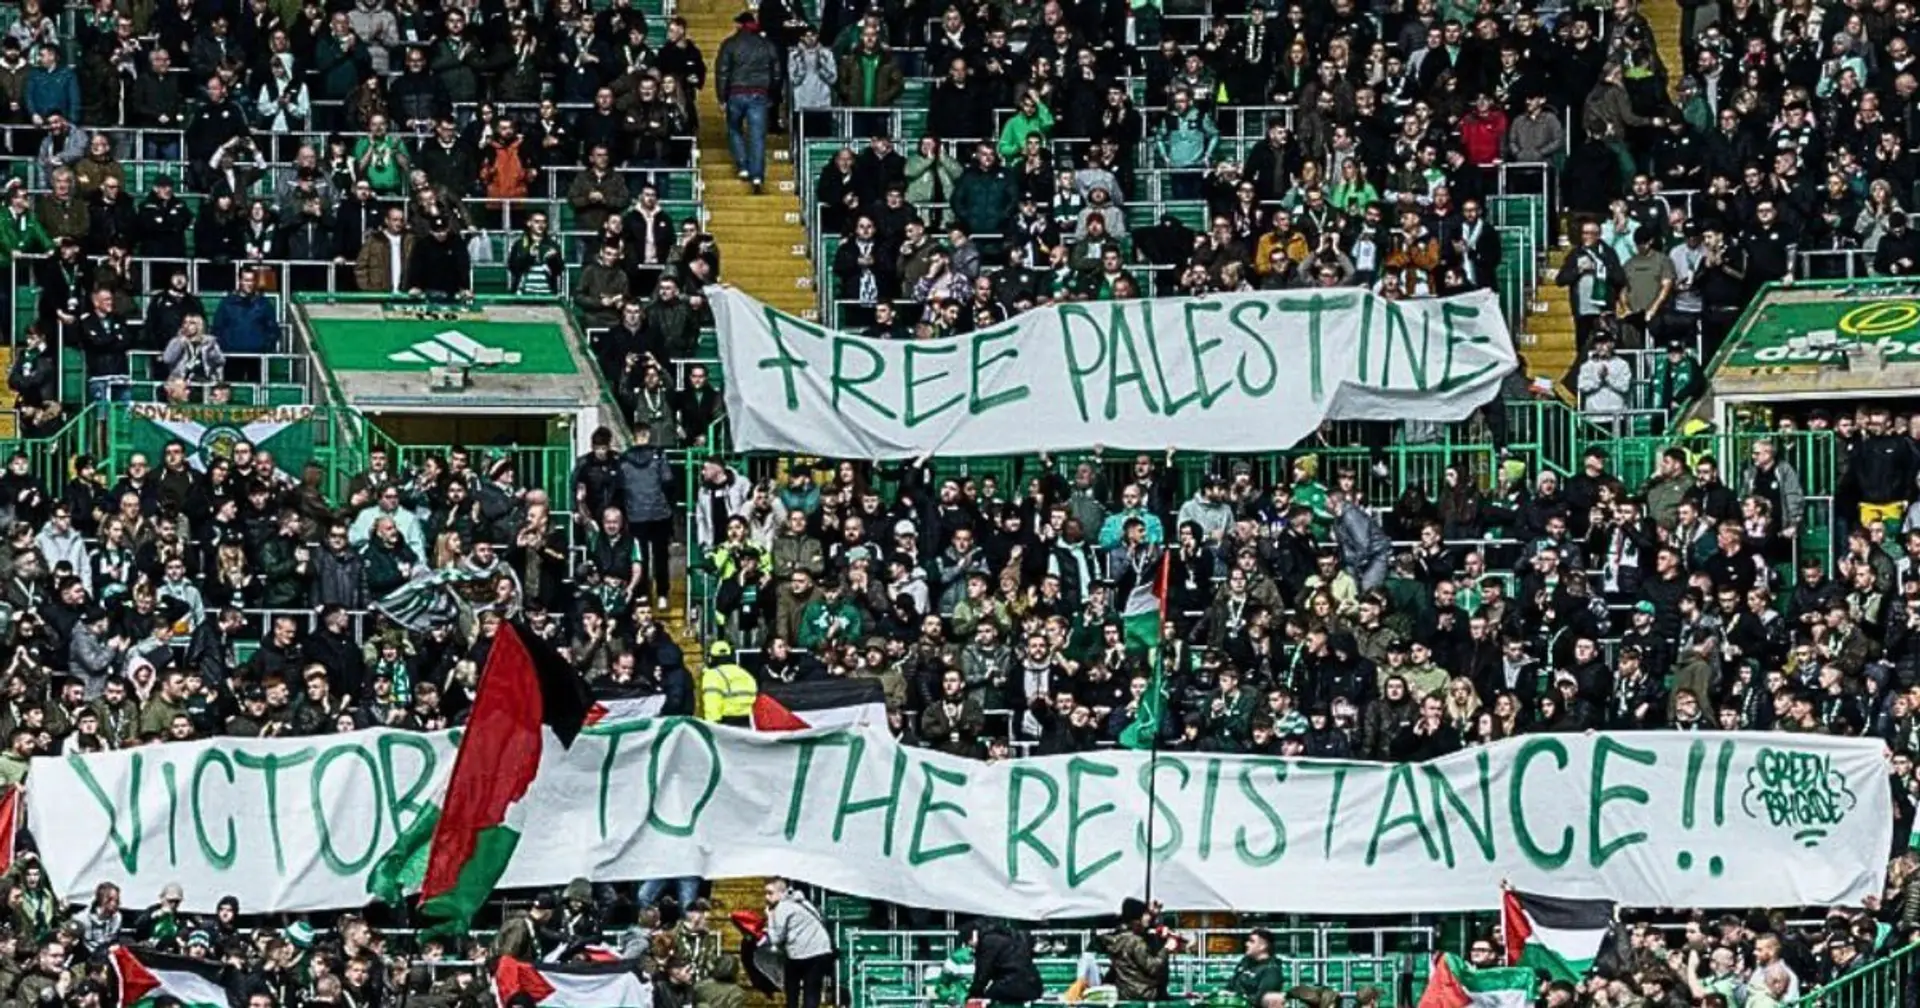 Celtic-Fans unterstützen den Angriff auf Israel: Sie zeigen ein Transparent mit der Aufschrift "Freiheit für Palästina"